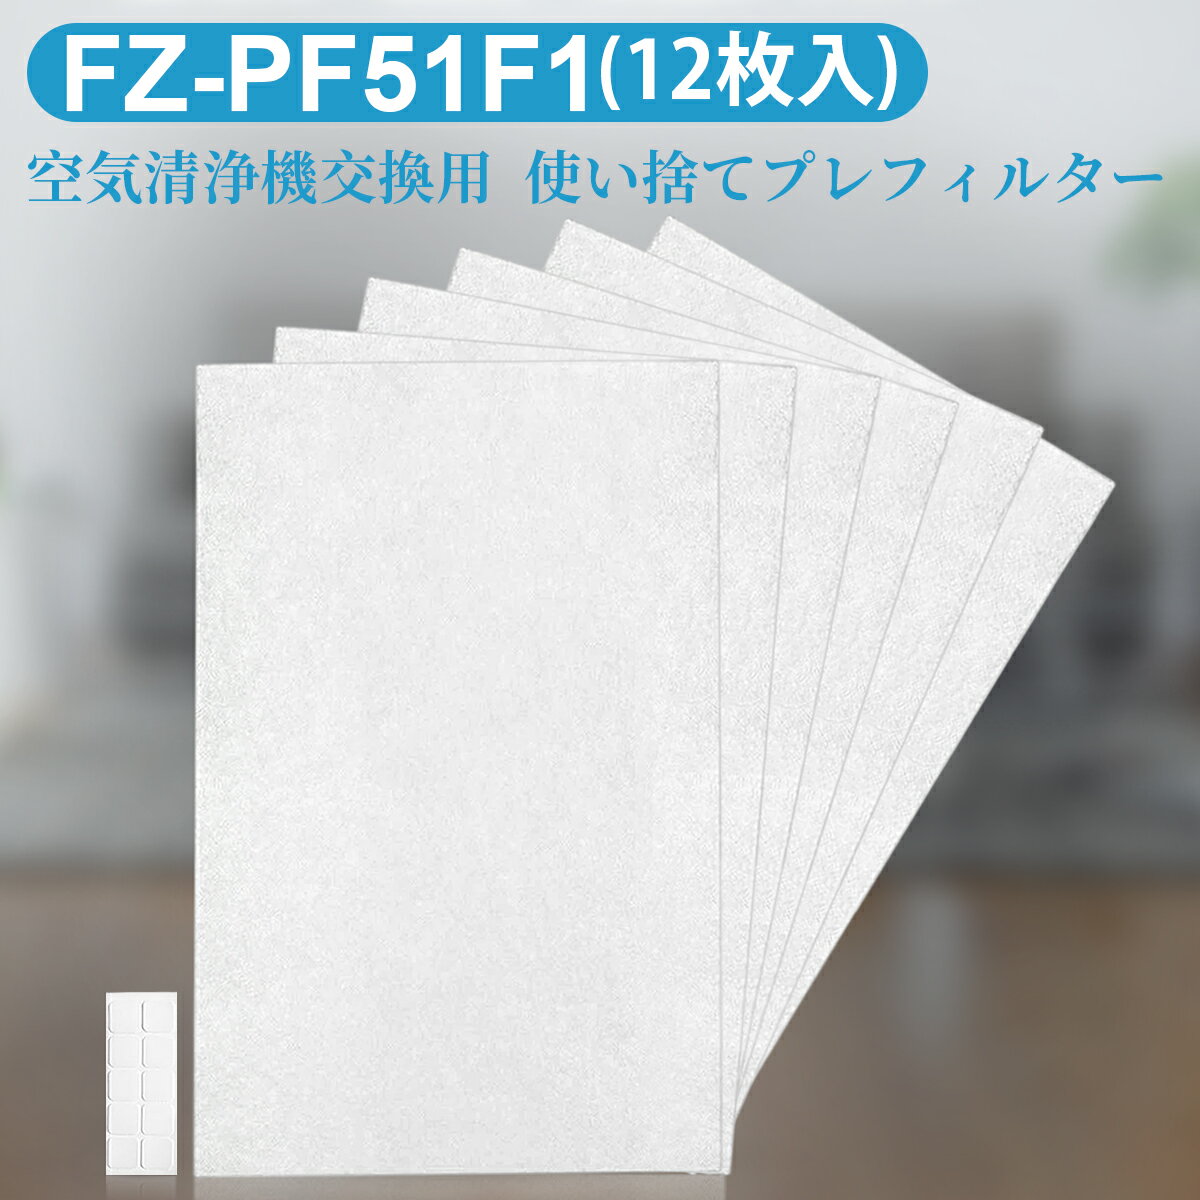 FZ-PF51F1 加湿空気清浄機用 使い捨てプレフィルター fz-pf51f1 シャープ 空気清浄機プレフィルター (12枚入り/互換品)